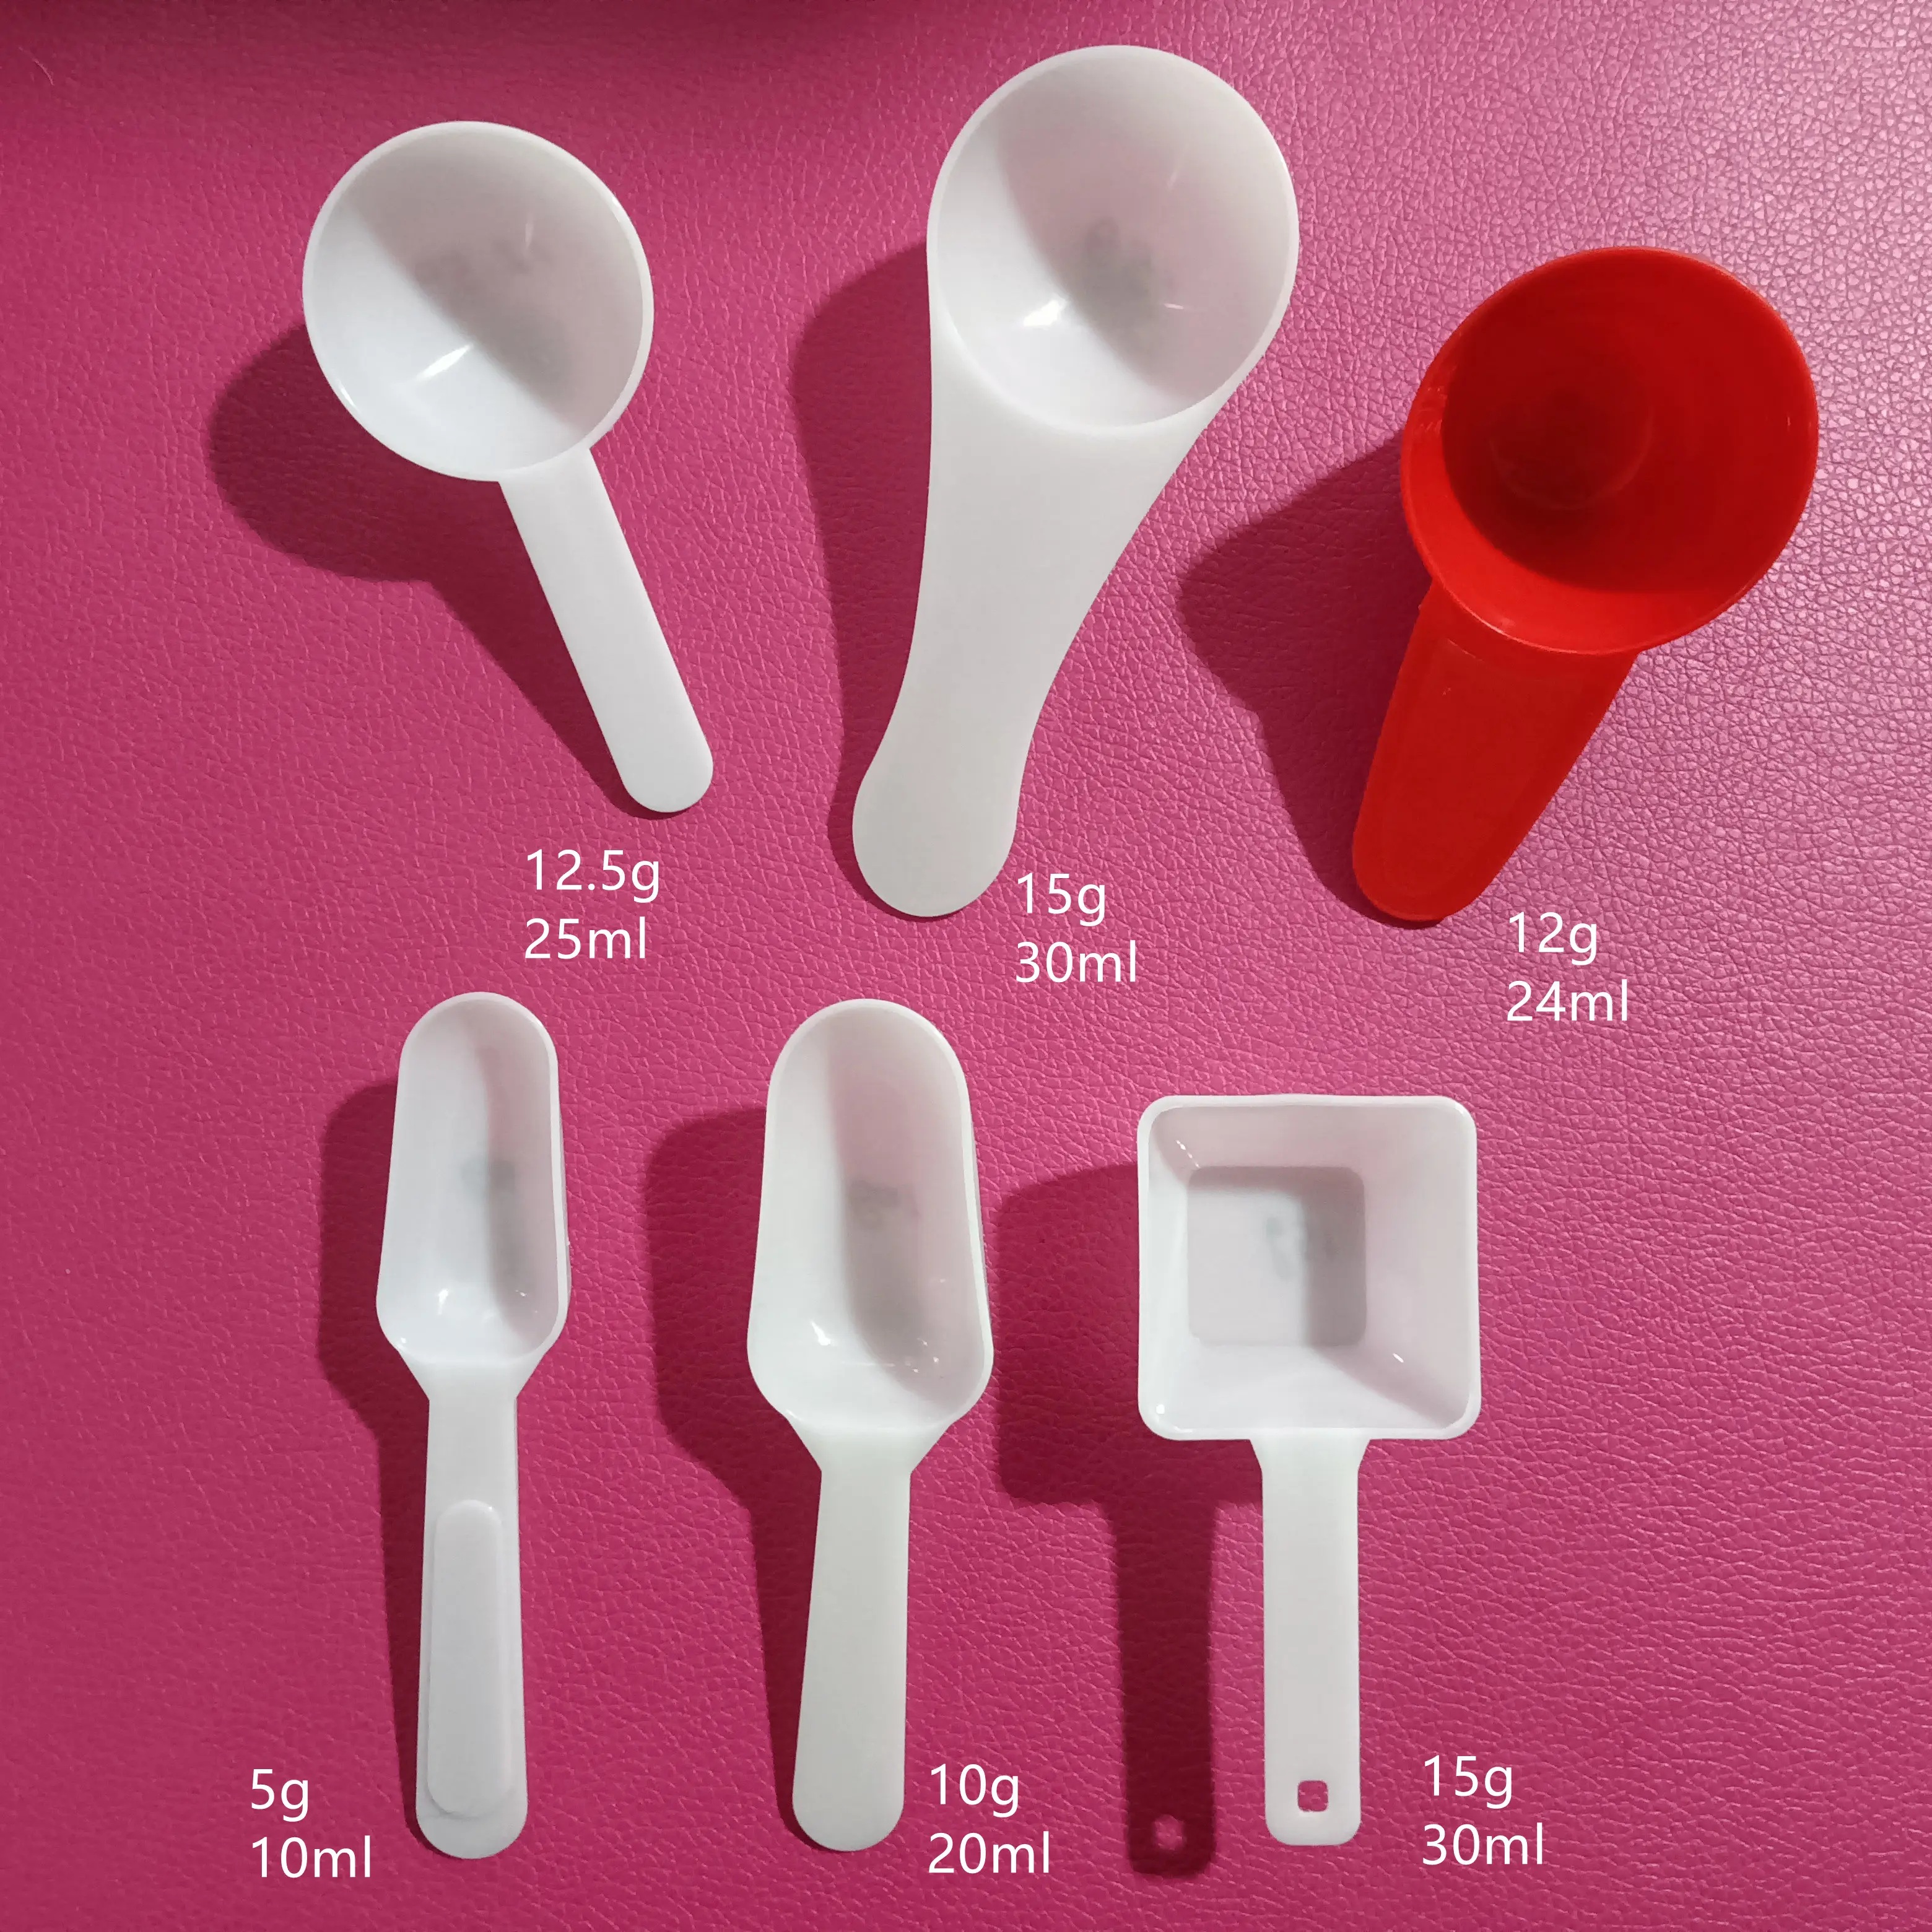 Cucchiai dosatori in plastica per uso alimentare cucchiaio da tè cucchiaini da caffè per chicchi di caffè spezie proteiche